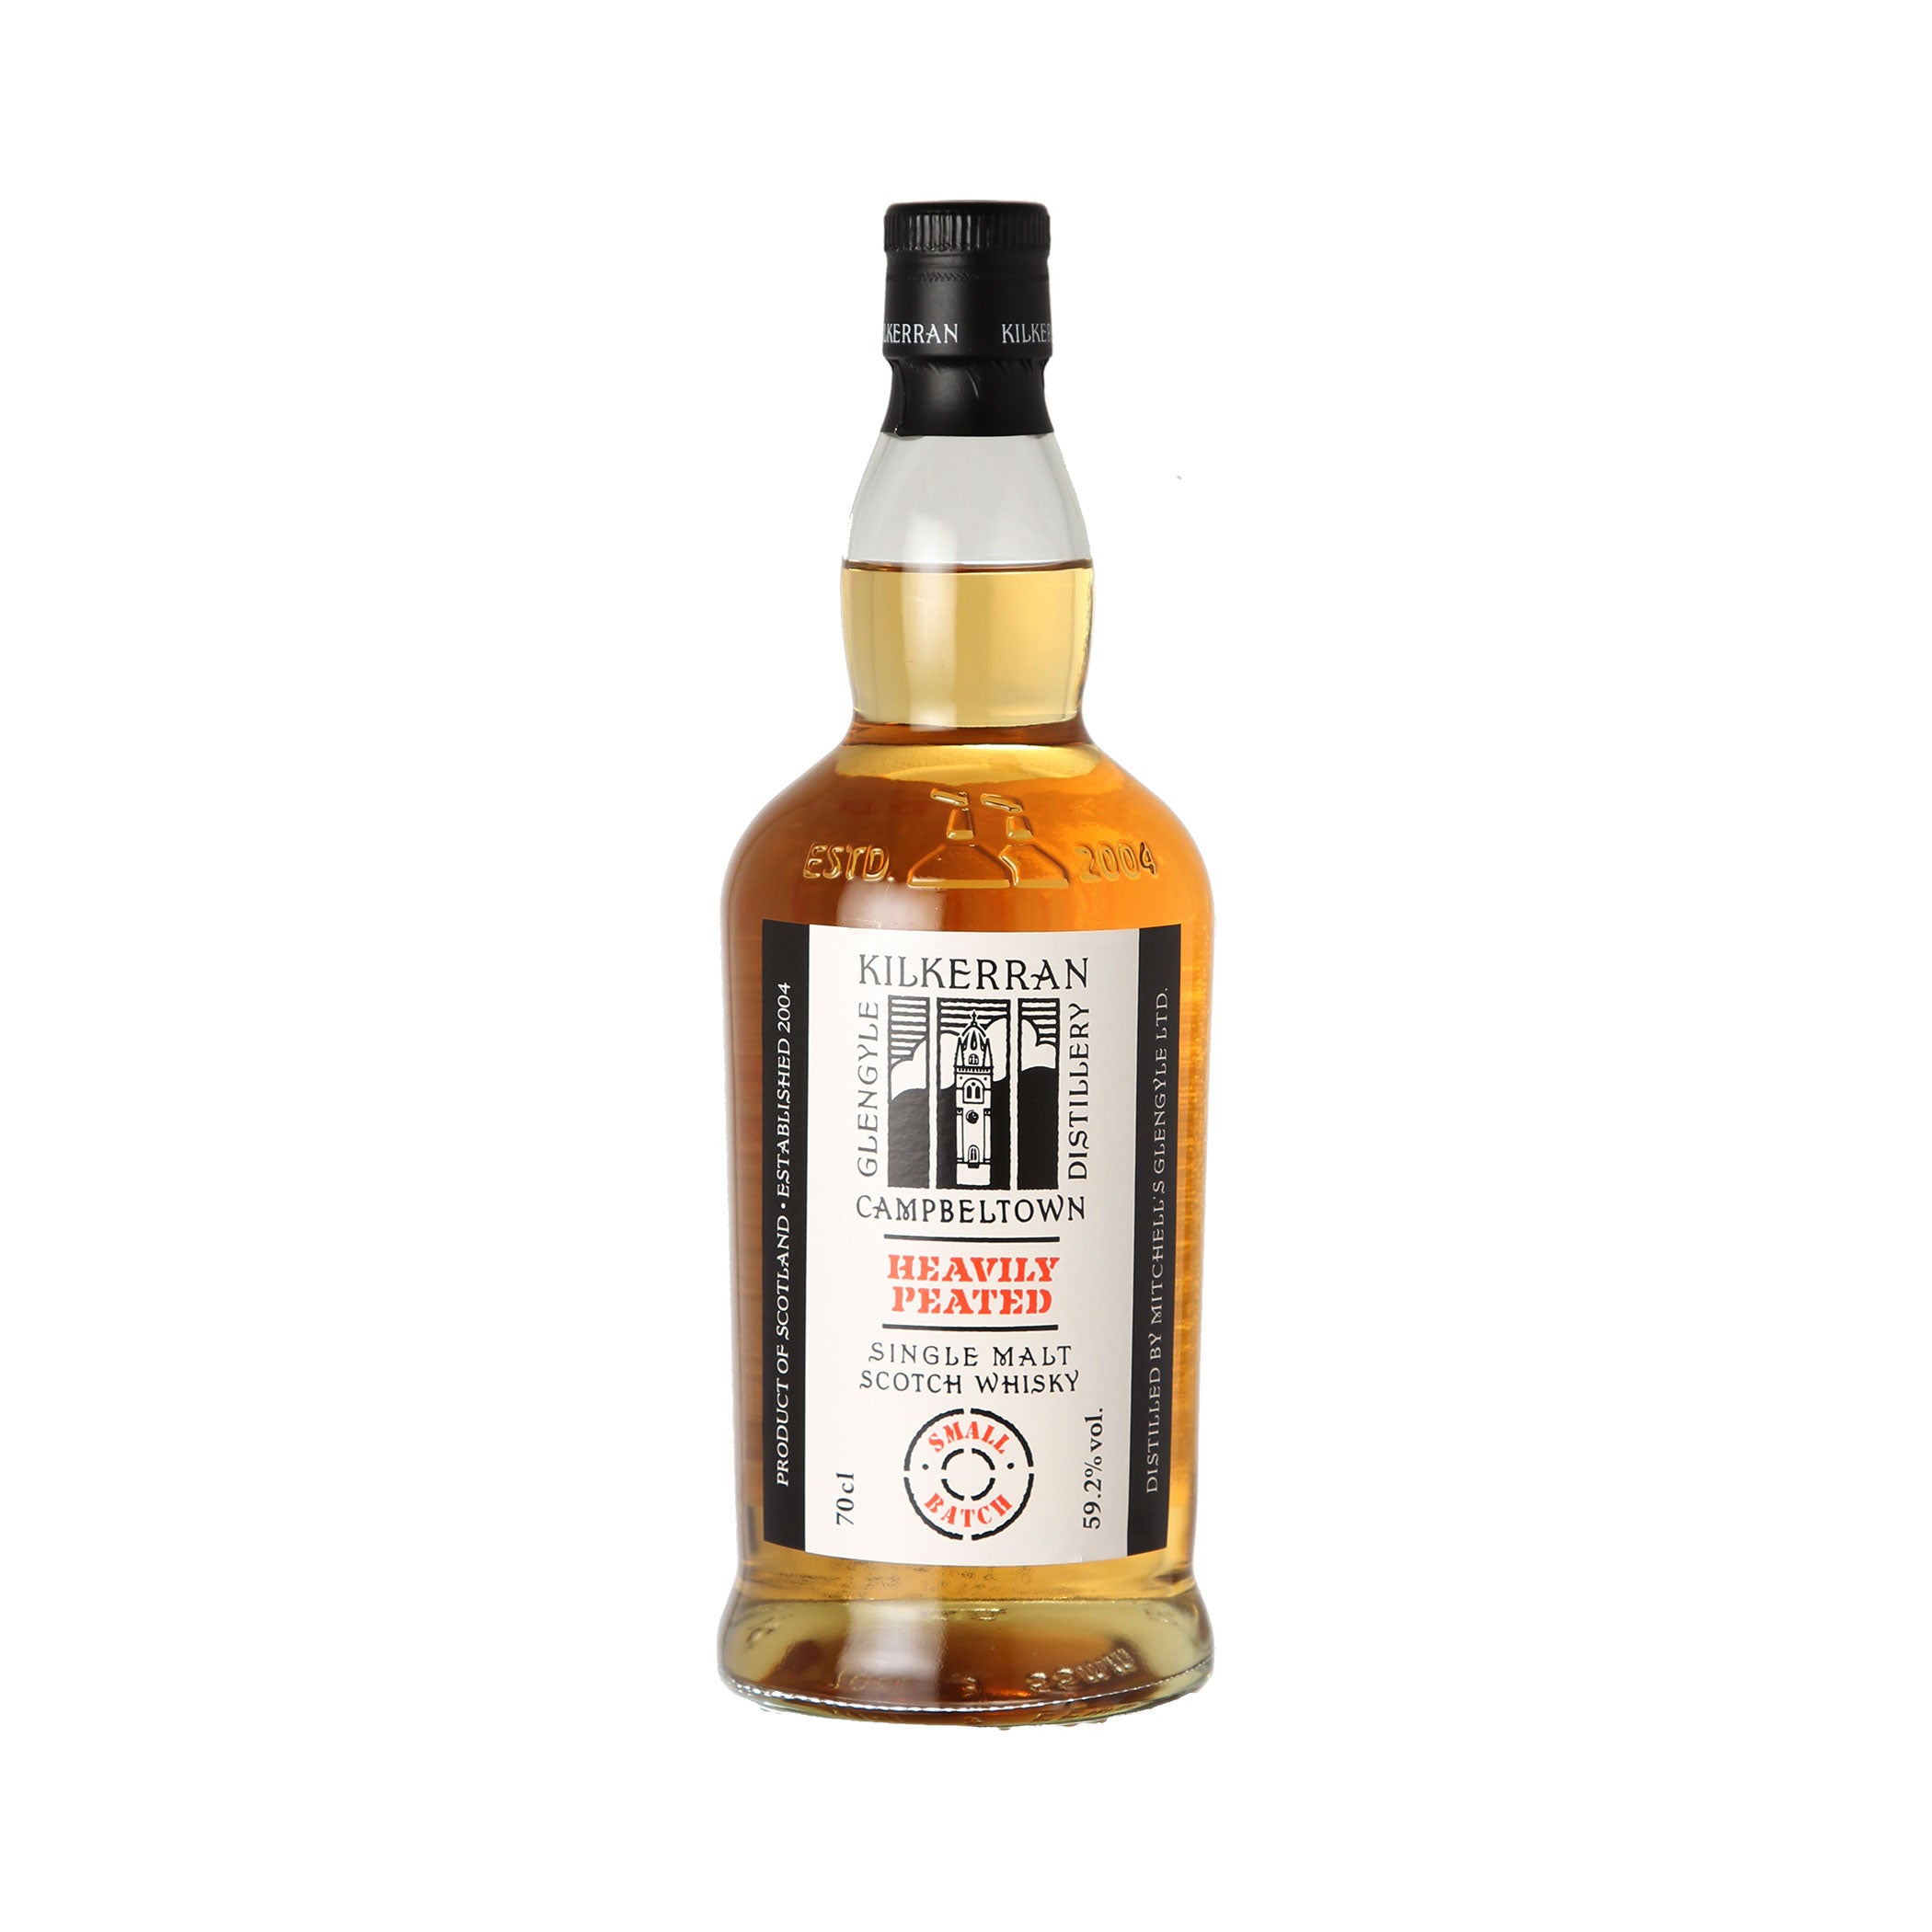 Kilkerran Heavily Peated - Batch 9 - Cask Strength - Single Malt Scotch Whisky